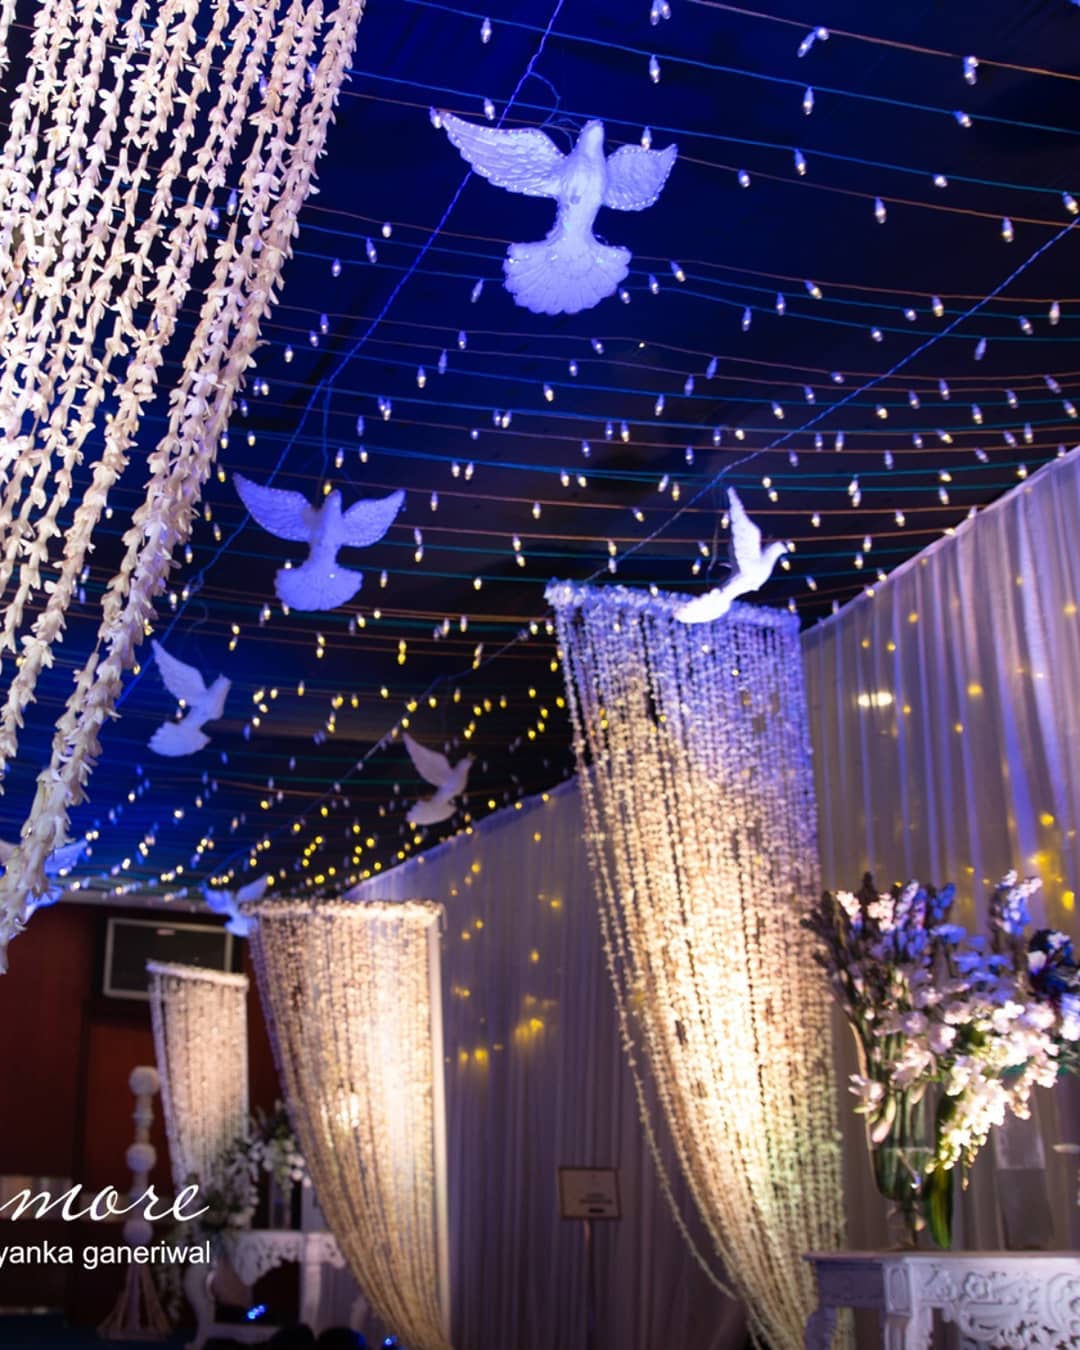 Saina Nehwal wedding and reception